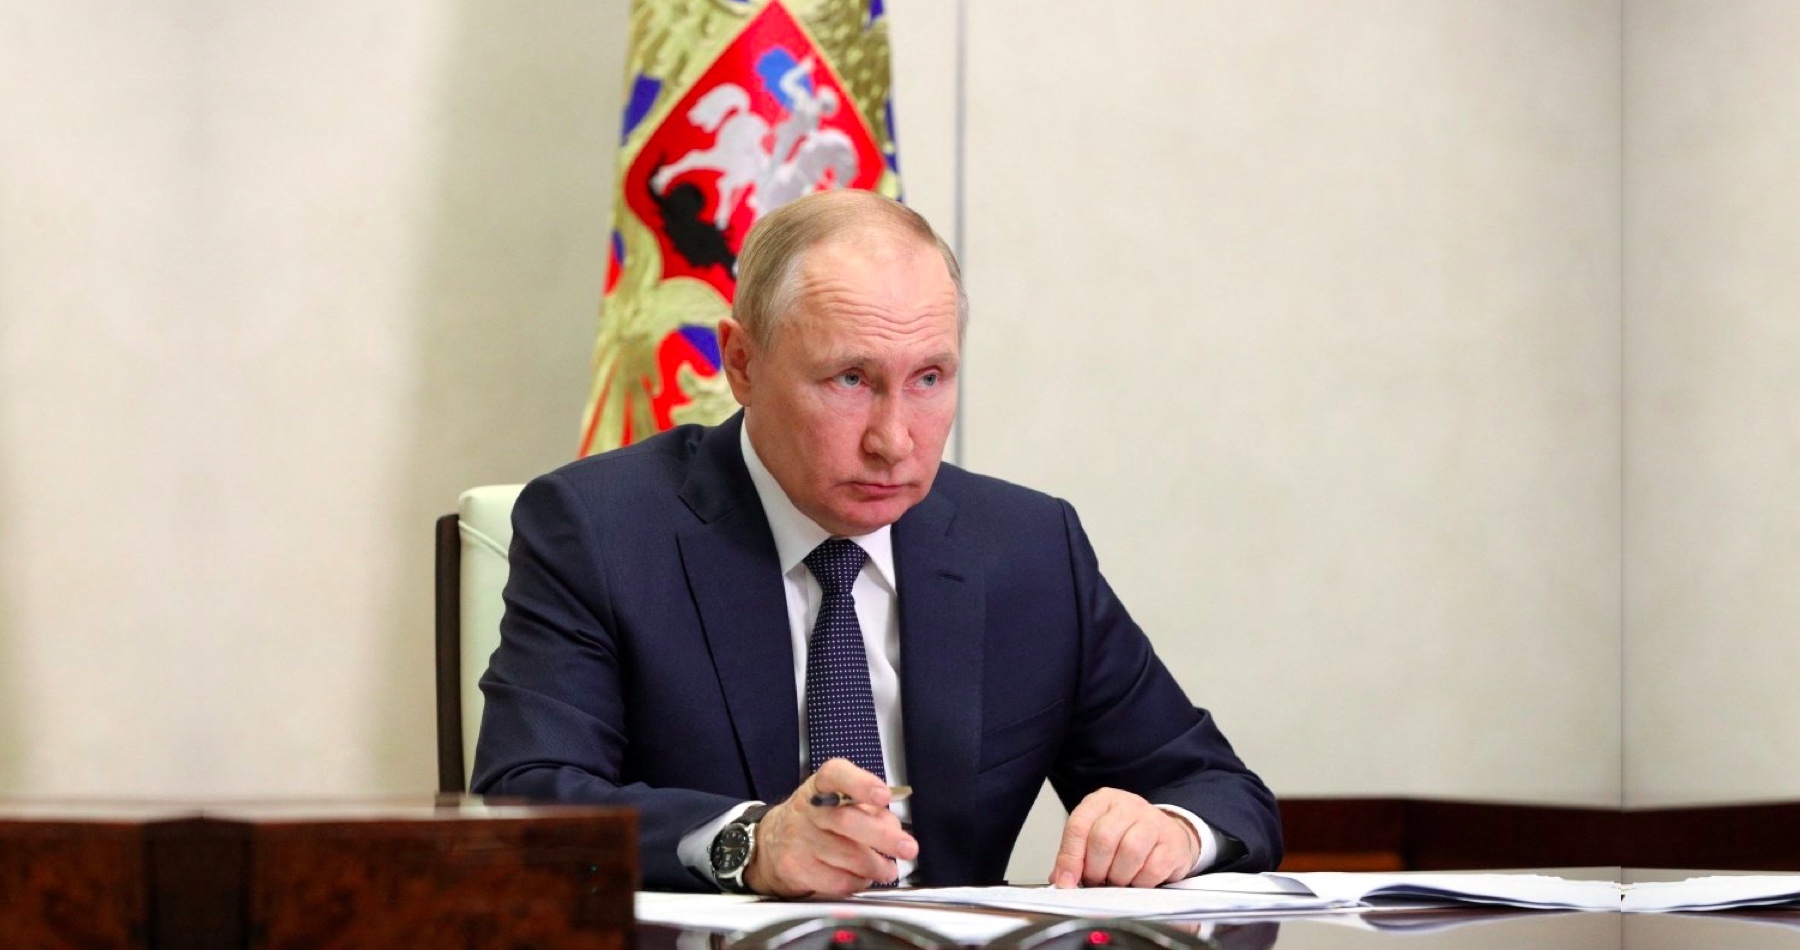 Vladimír Putin: Nový světový řád se globalistům zavést nepodaří. Padá jim na hlavu hospodářství. Děsí je sociální výbuch u nich doma. Prodlužováním bojů proti Rusku na ukrajinském válčišti to chtějí zamaskovat. Ale svět už je jinde